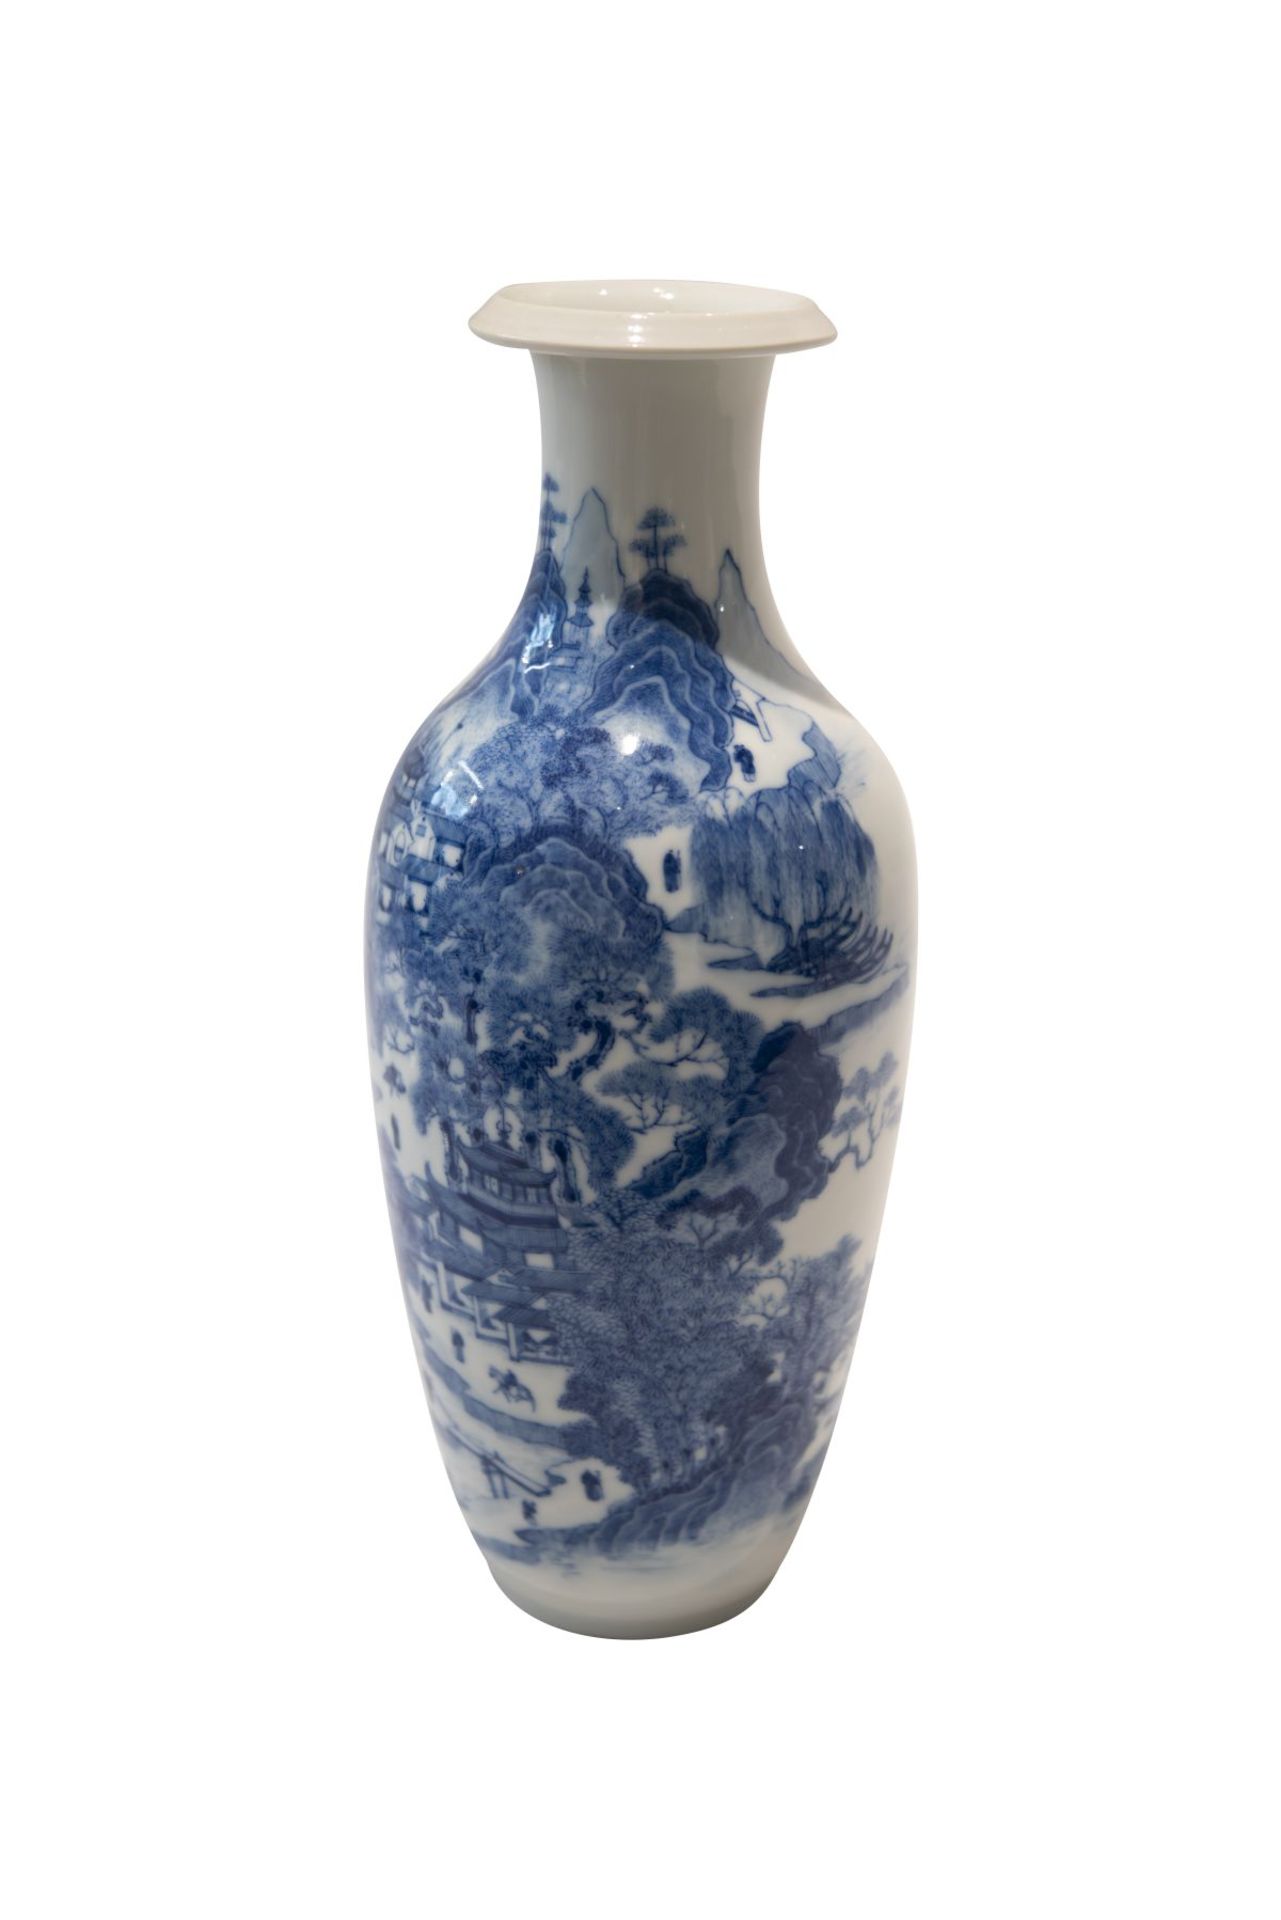 Blau-weise VaseBlau-weise Vase mit unterglasurblaue Vierzeichen Marke. Porzellan, auf der Wandung - Image 2 of 5